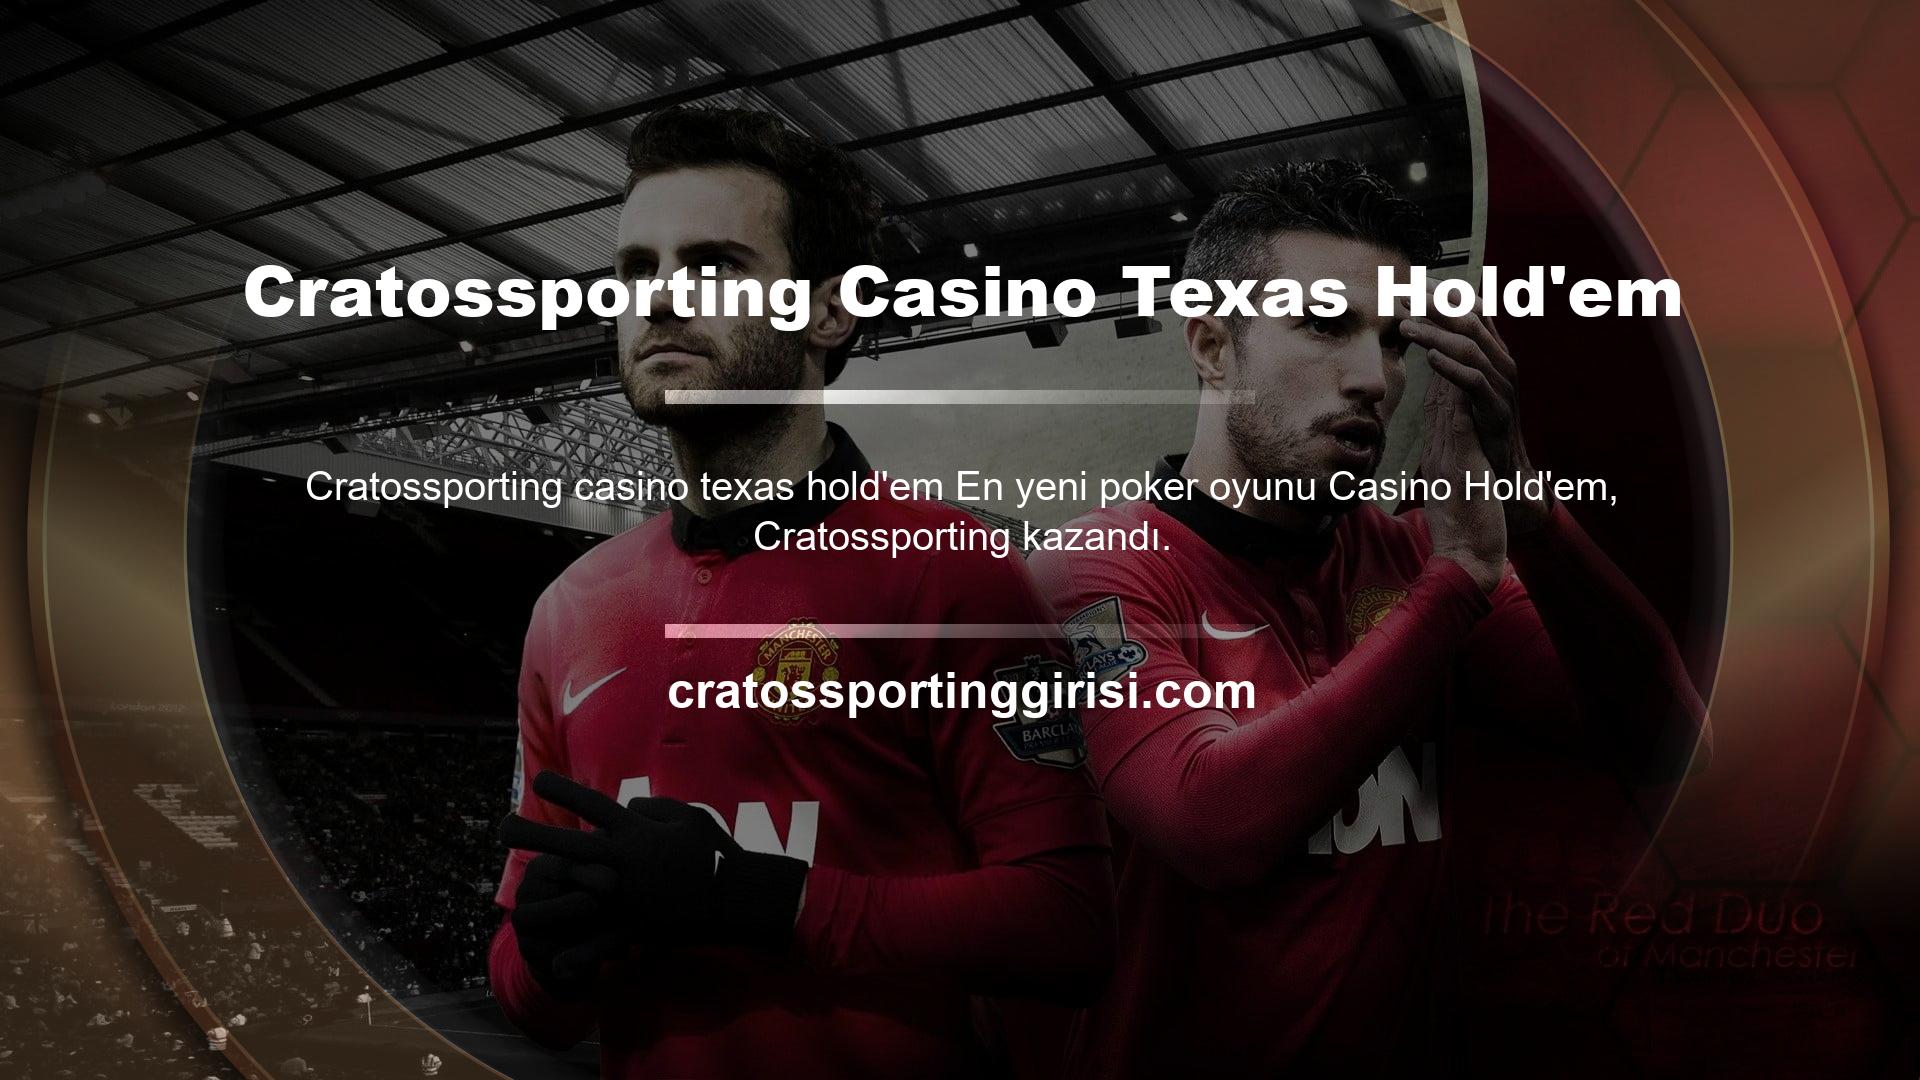 Cratossporting üye olun ve çevrimiçi casino endüstrisindeki en popüler oyunlardan biri olan Texas Hold'em'de (Poker) kazanın